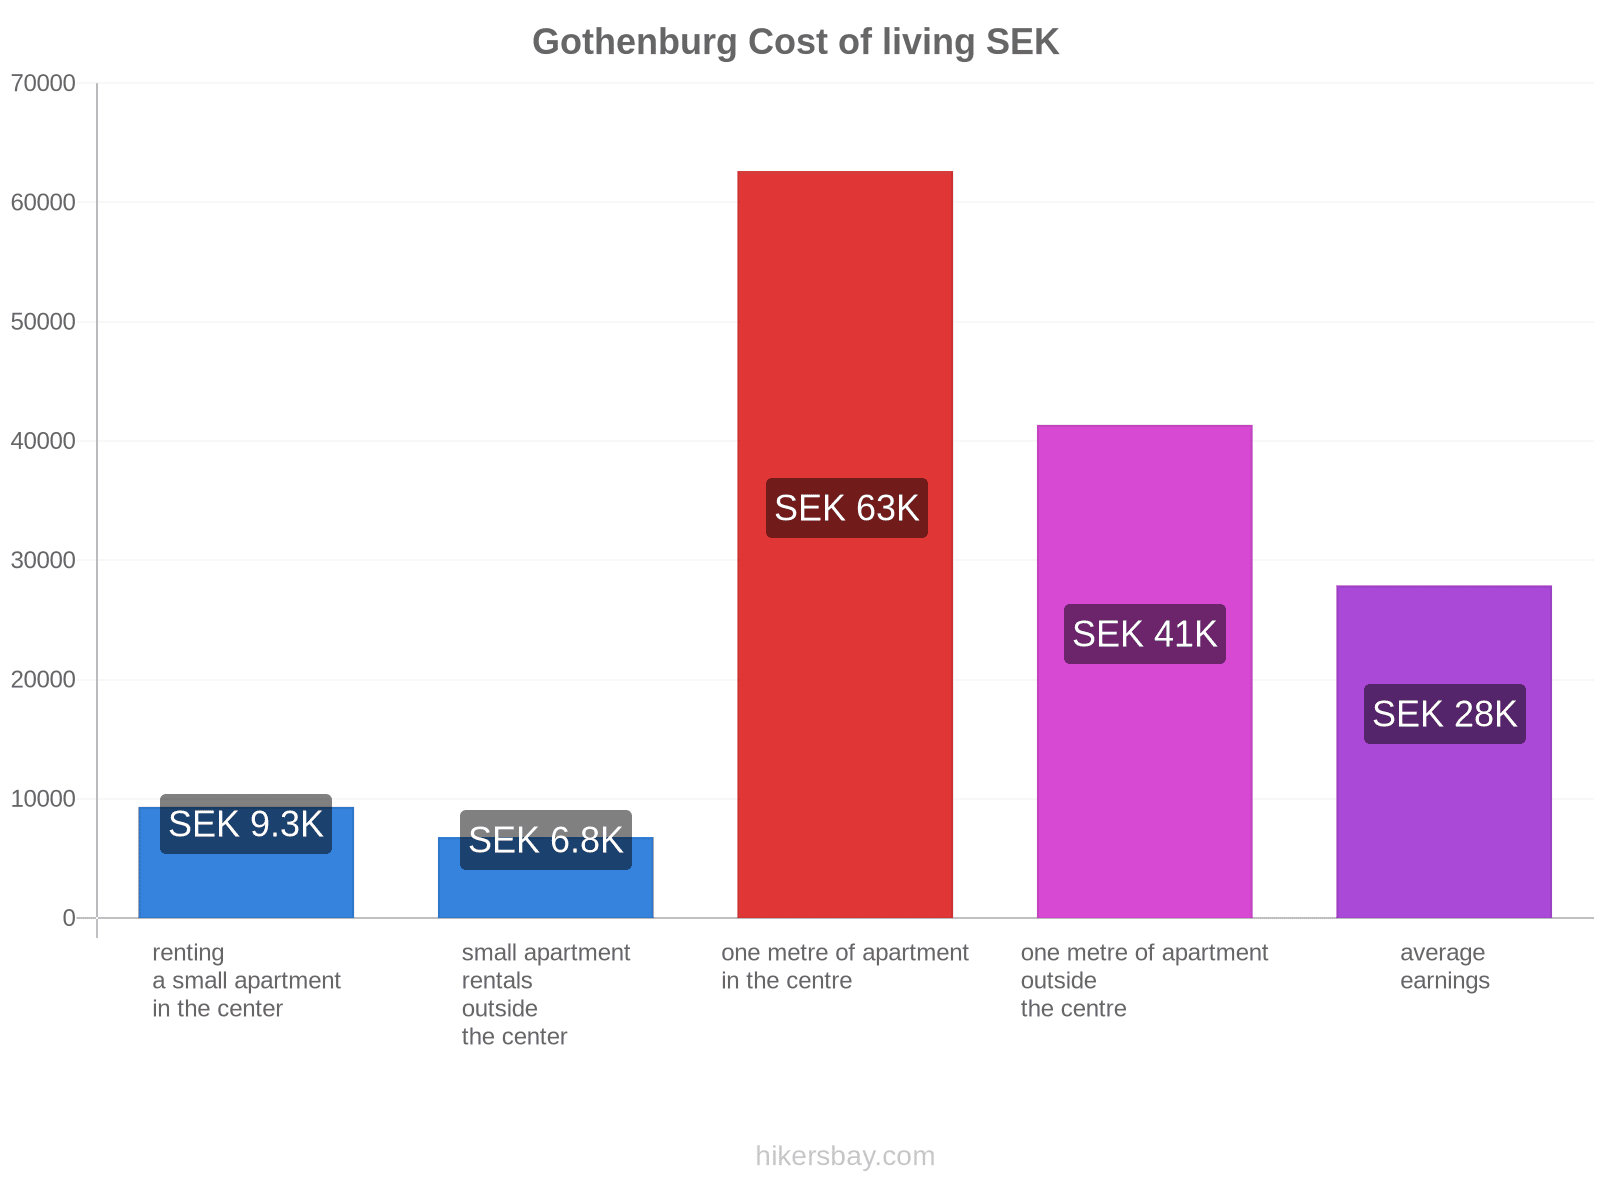 Gothenburg cost of living hikersbay.com